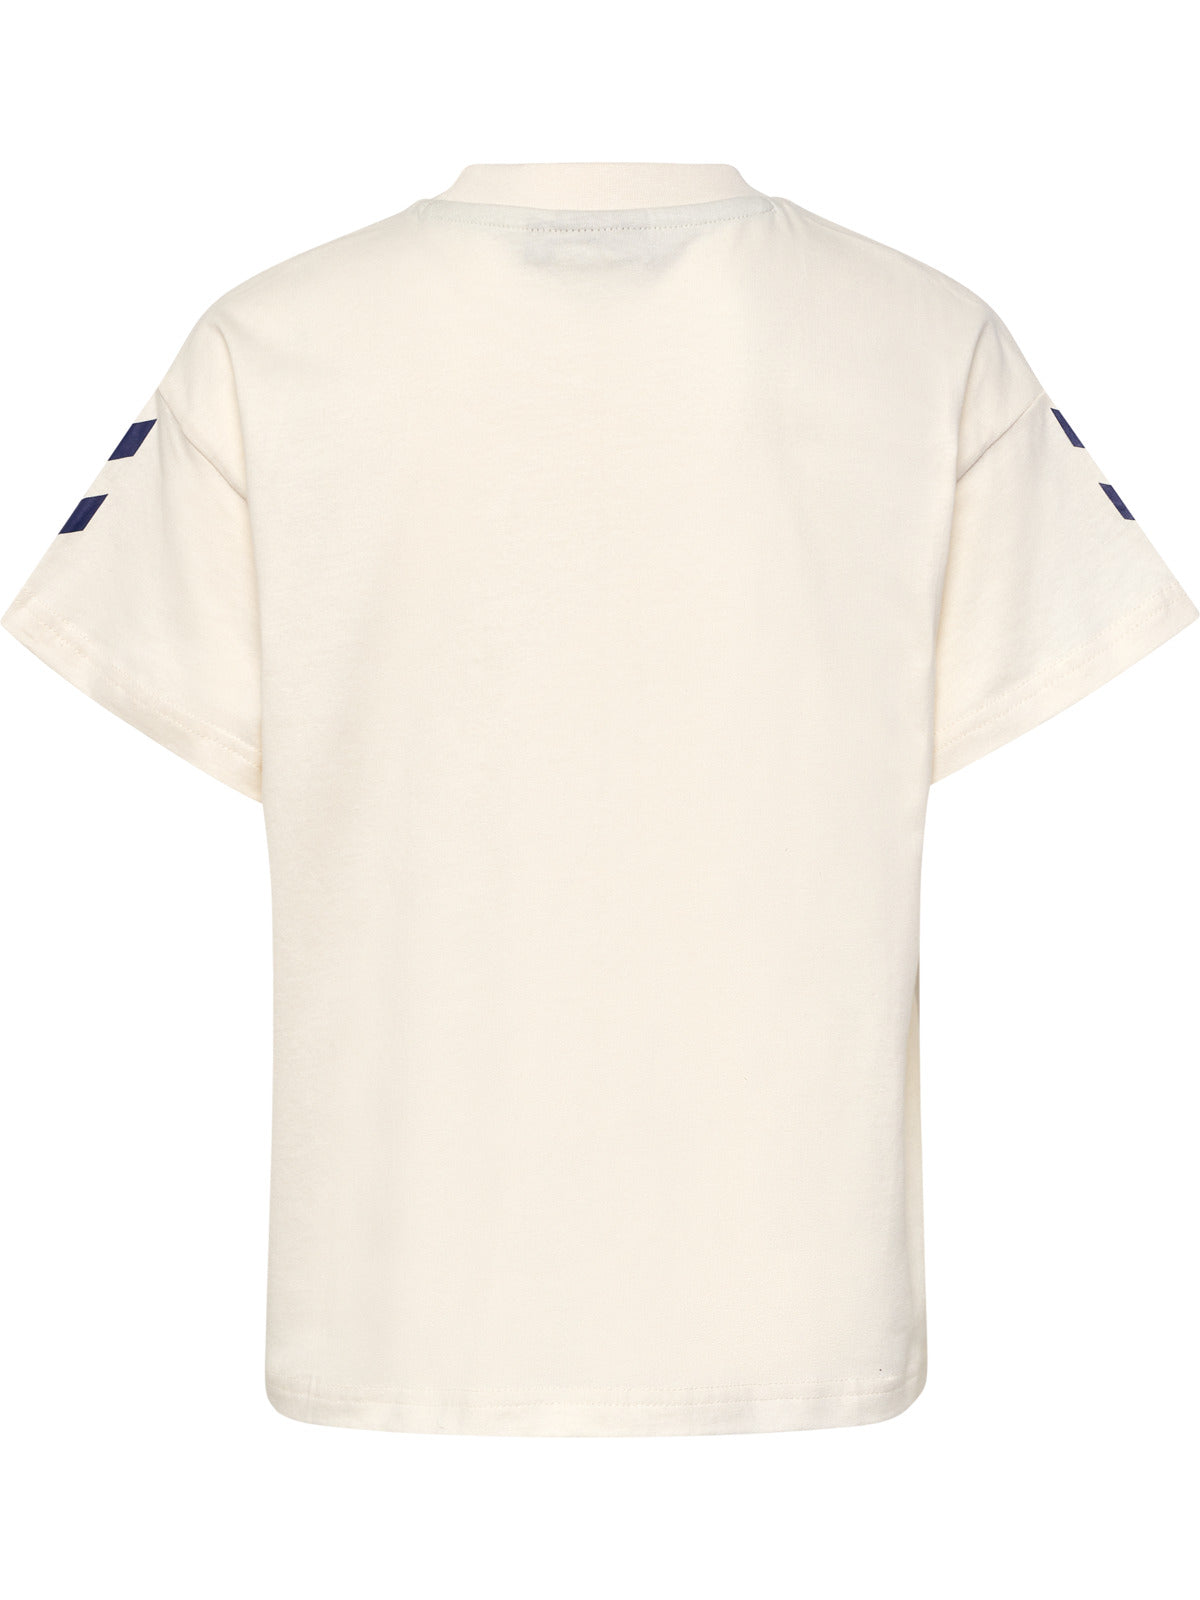 HUMMEL 4-14ÅR Art boxy  T-shirt Off-White